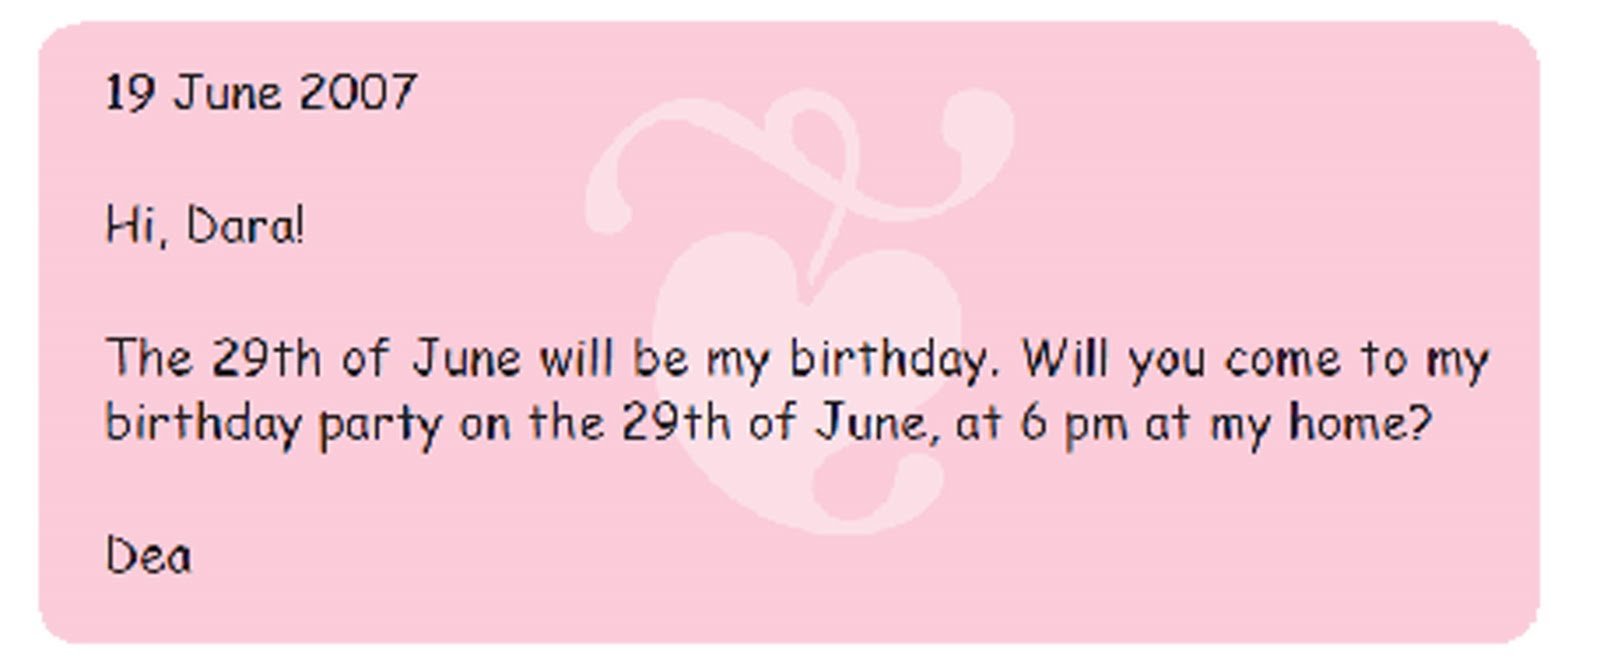 Contoh Invitation Dalam Bahasa Inggris Tentang Birthday Party